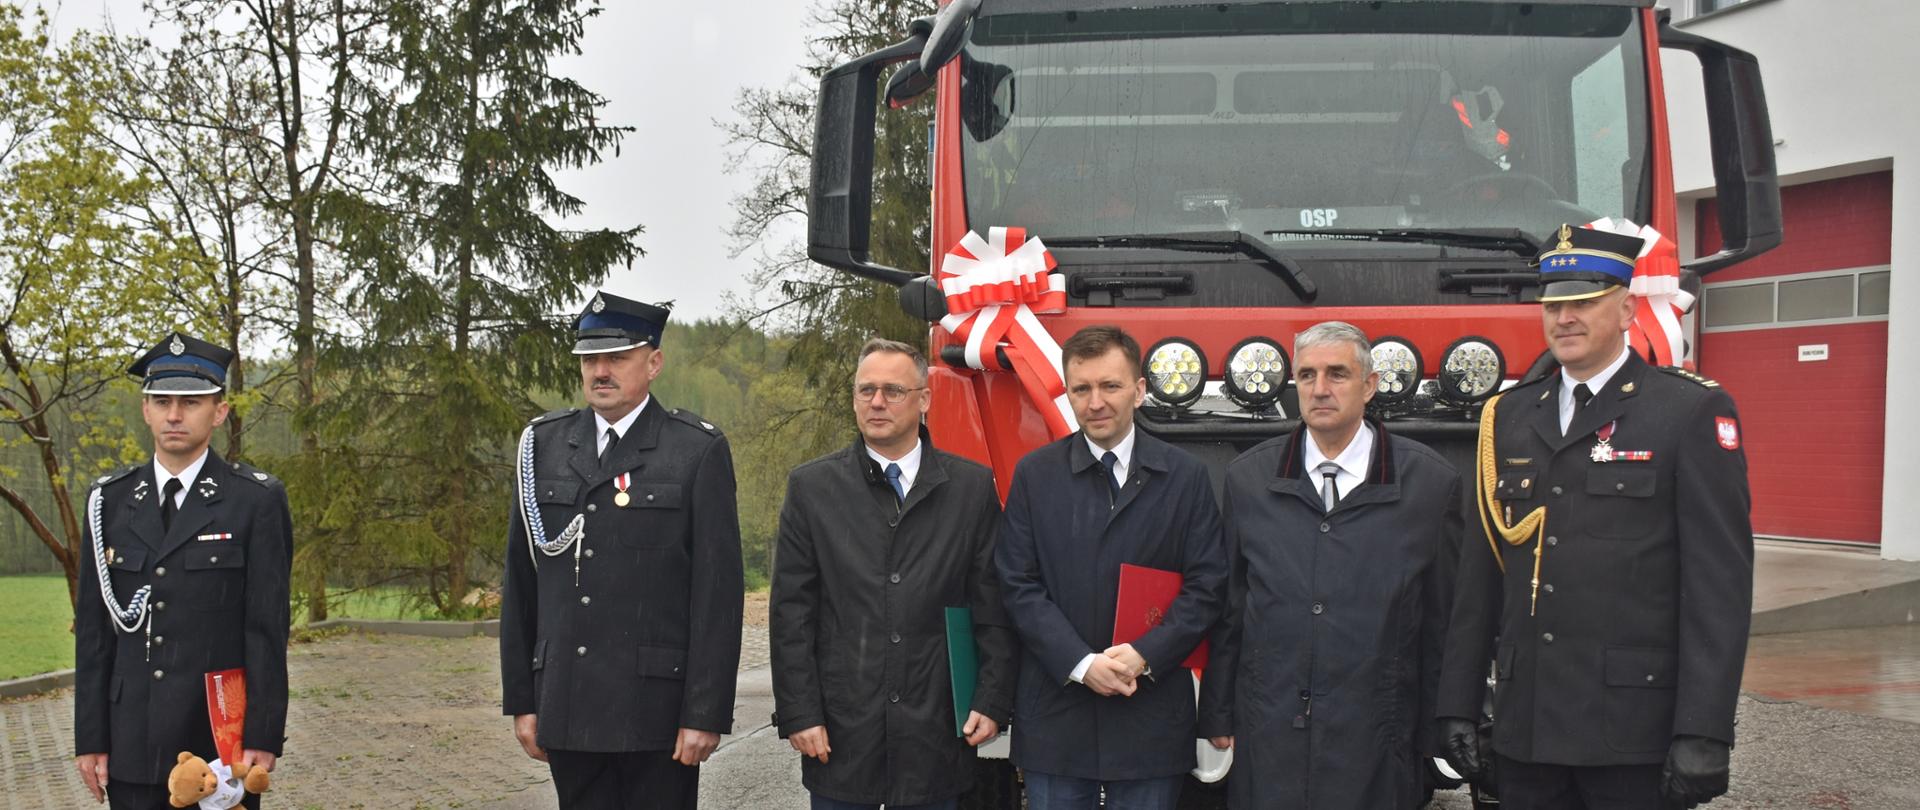 Zdjęcie wykonano w ciągu dnia podczas uroczystości gminnych obchodów dnia strażaka 2023 w Kamieniu Krajeńskim. sześcioro mężczyzn ubranych w mundury wyjściowe i garnitury stoją przed samochodem ratowniczo-gaśniczym MAN. 